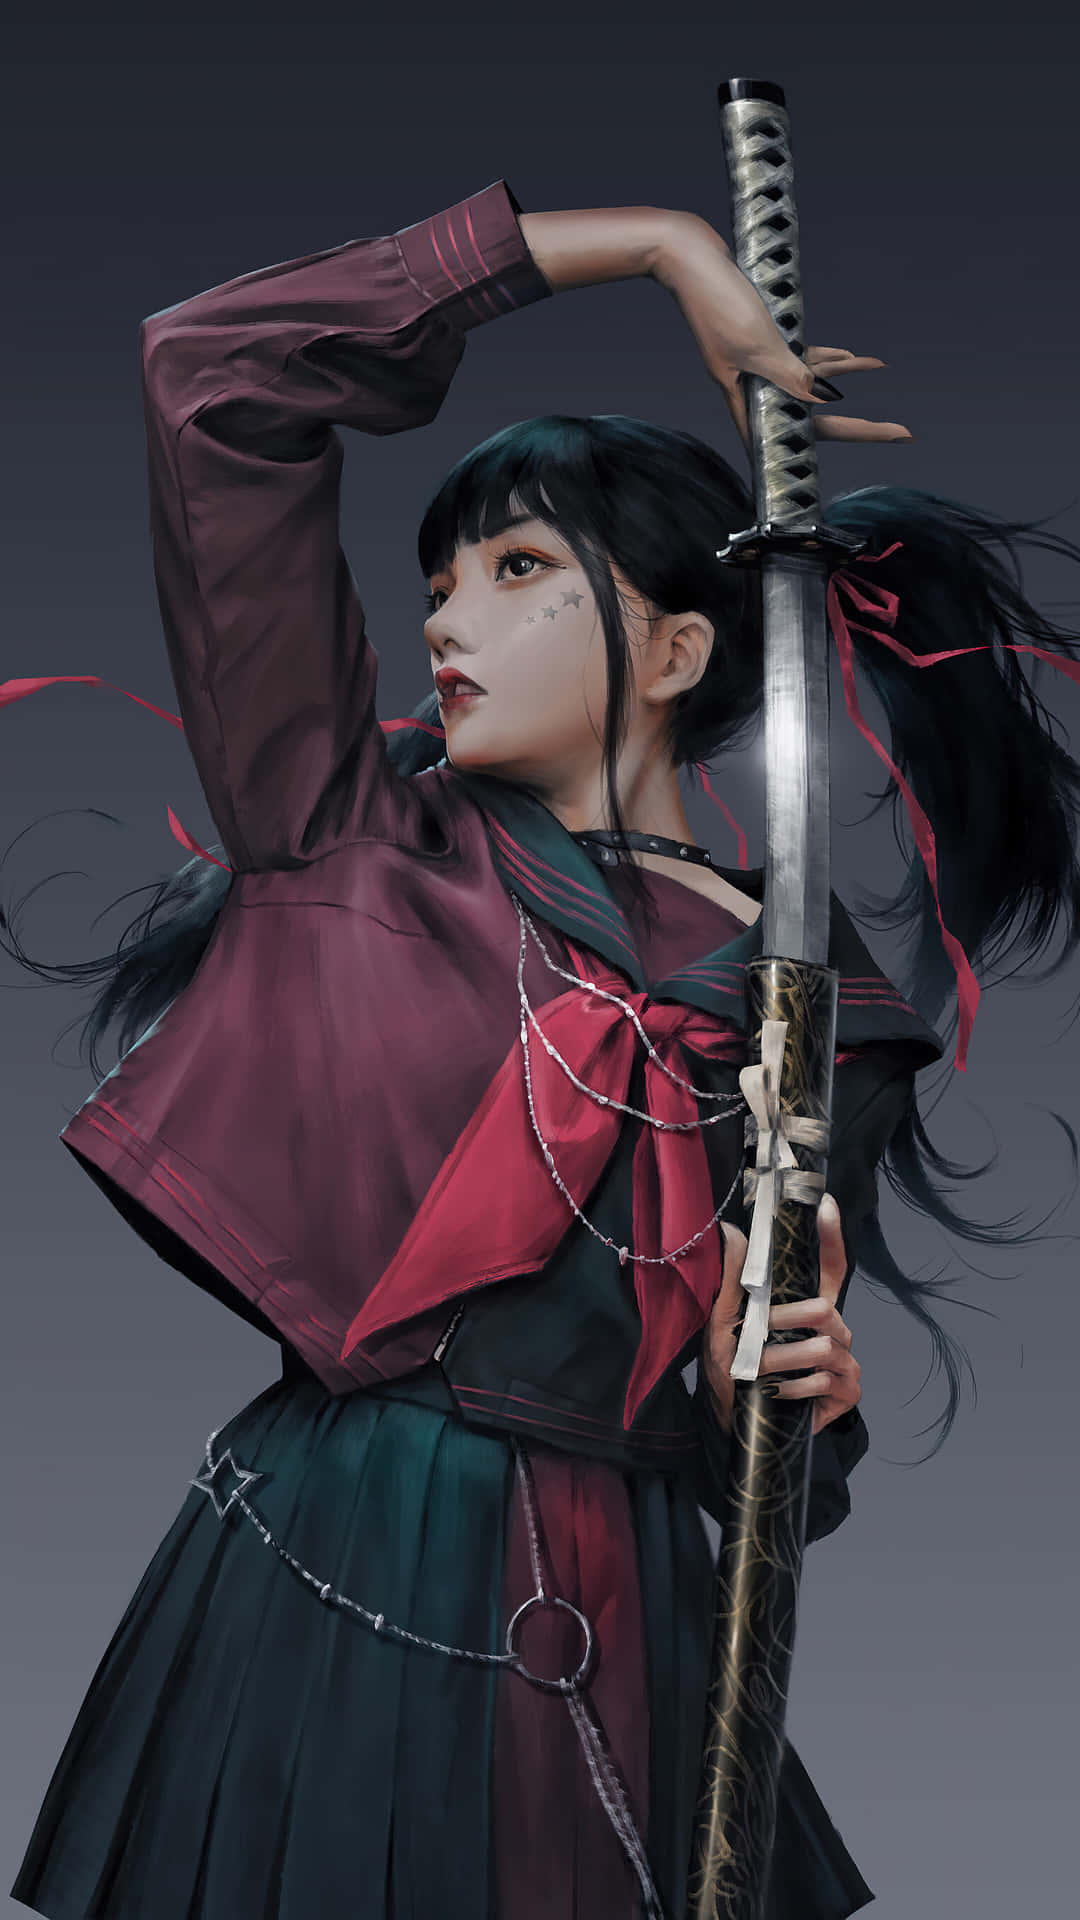 Captivating Female Samurai in Battle Stance Wallpaper